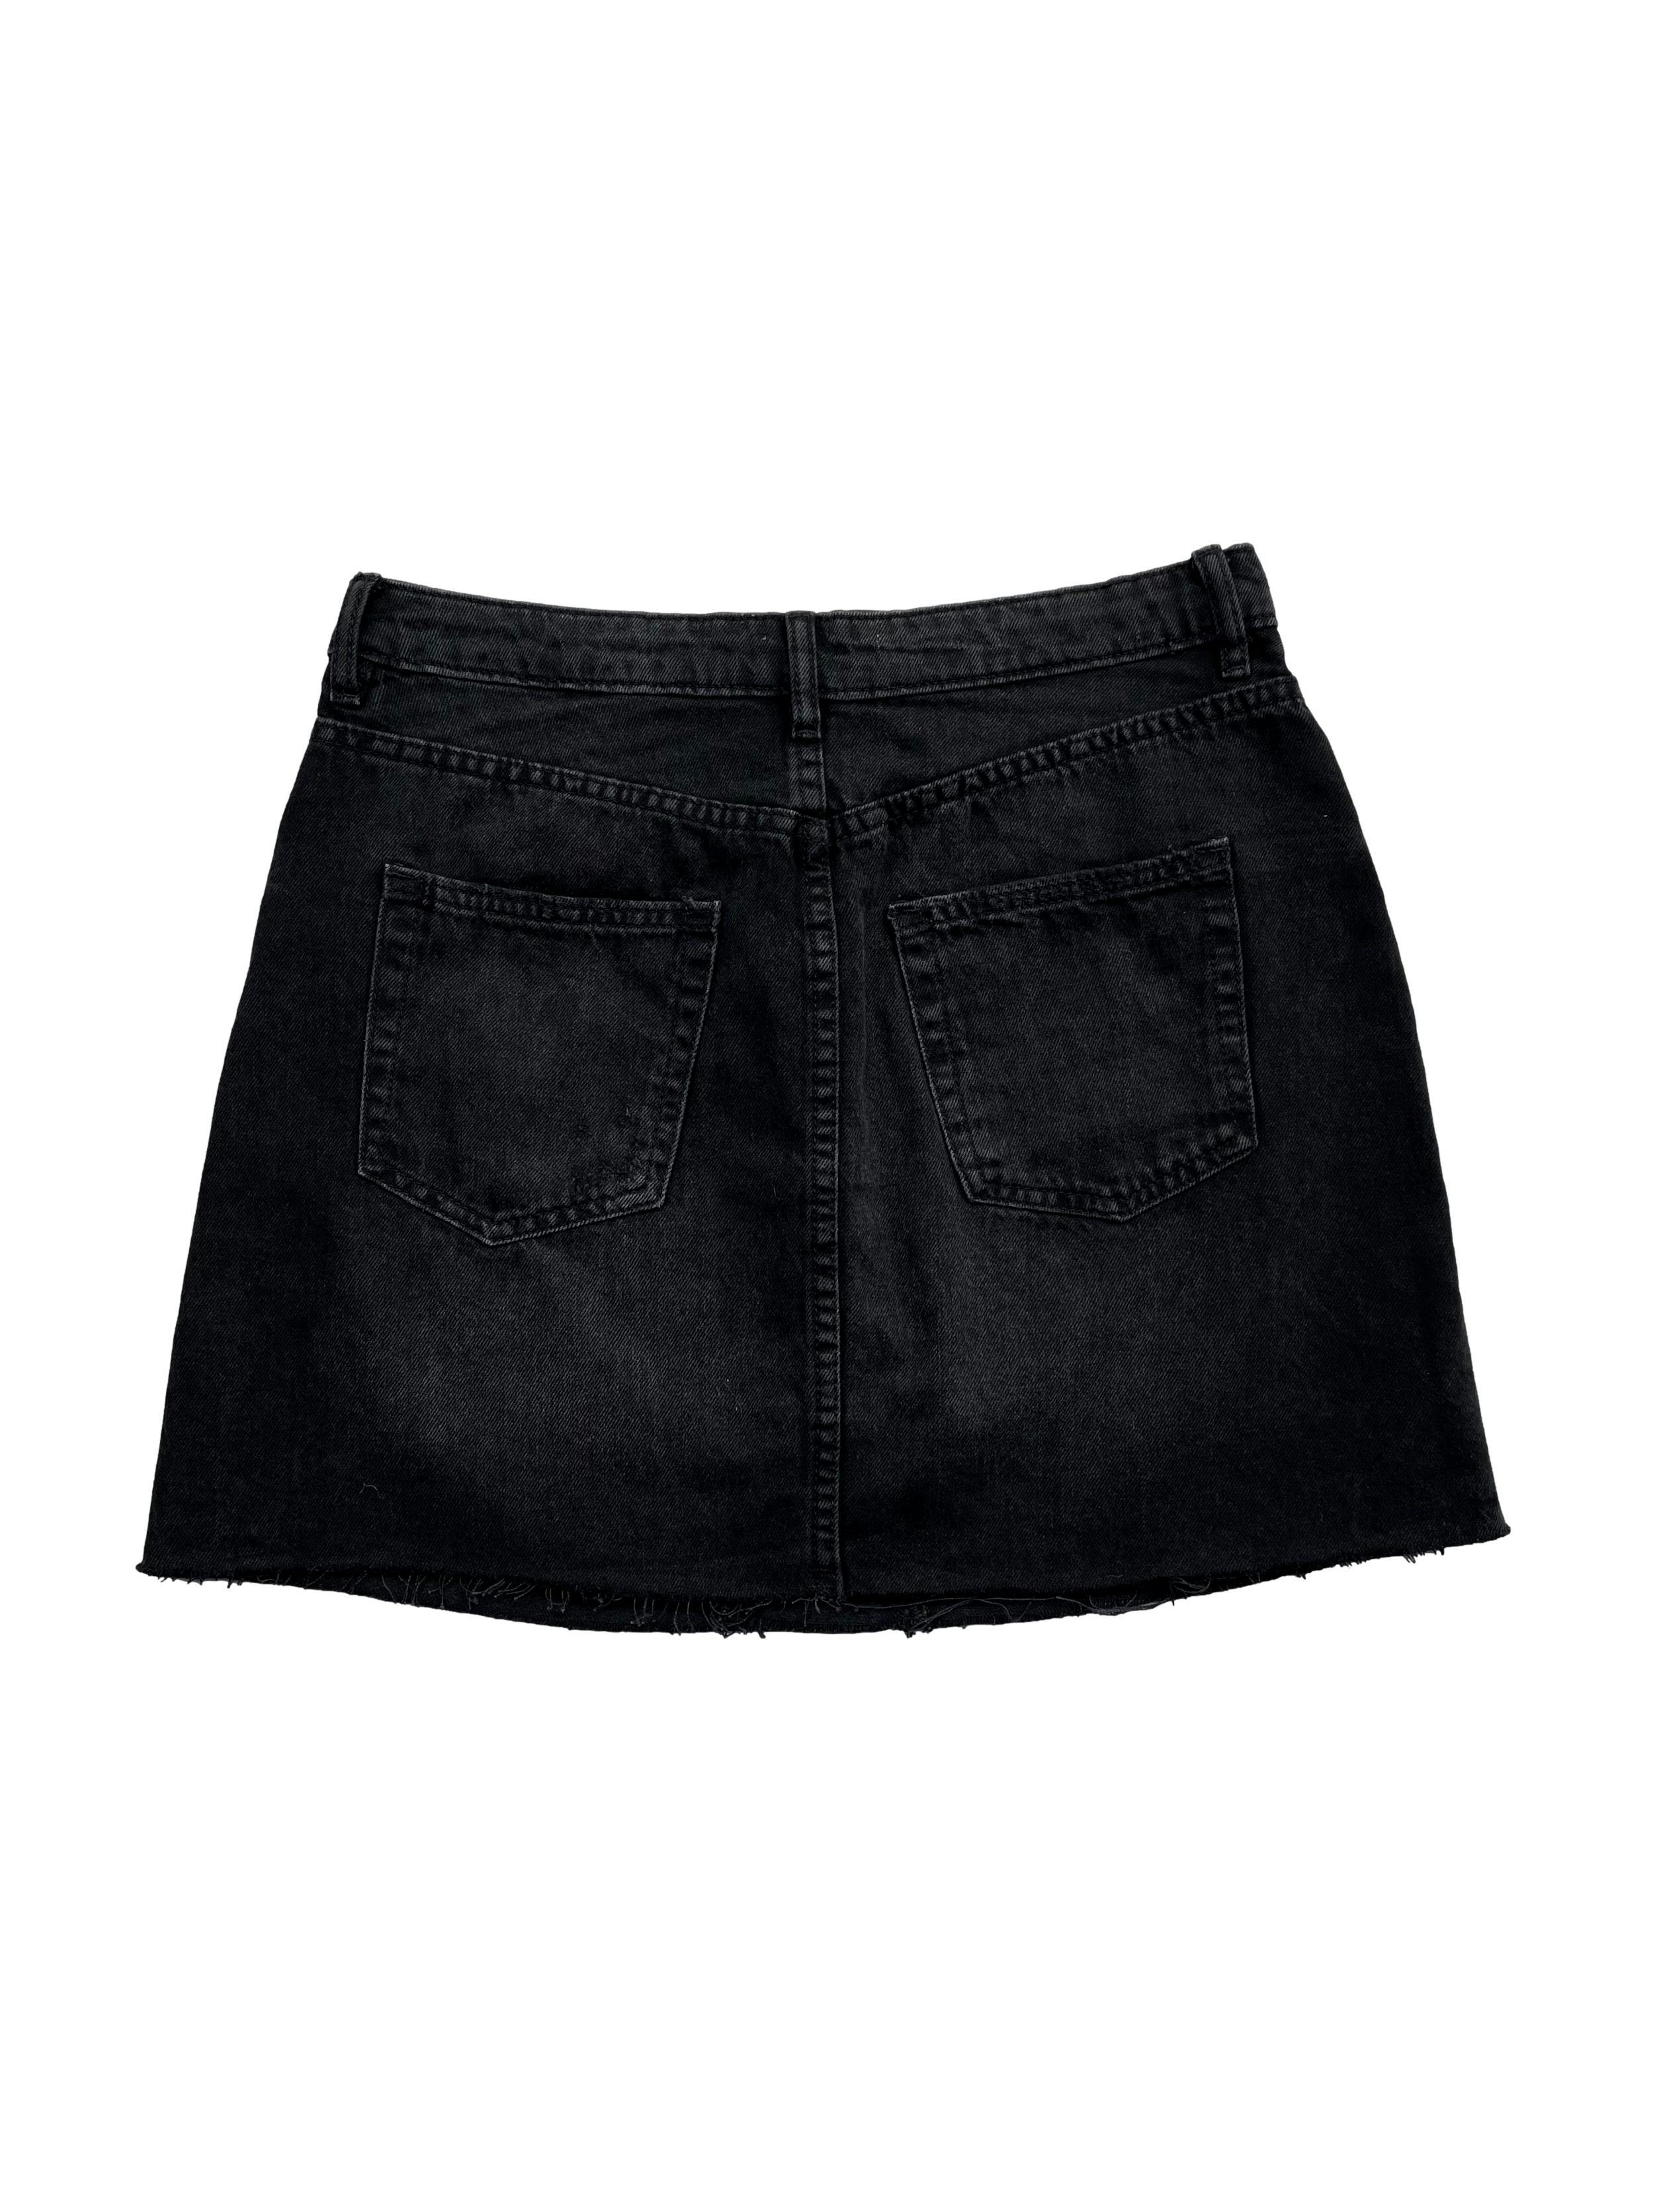 Falda slim H&M, negra efecto lavado, con basta desflecada. Cintura: 74cm, Largo: 41cm.